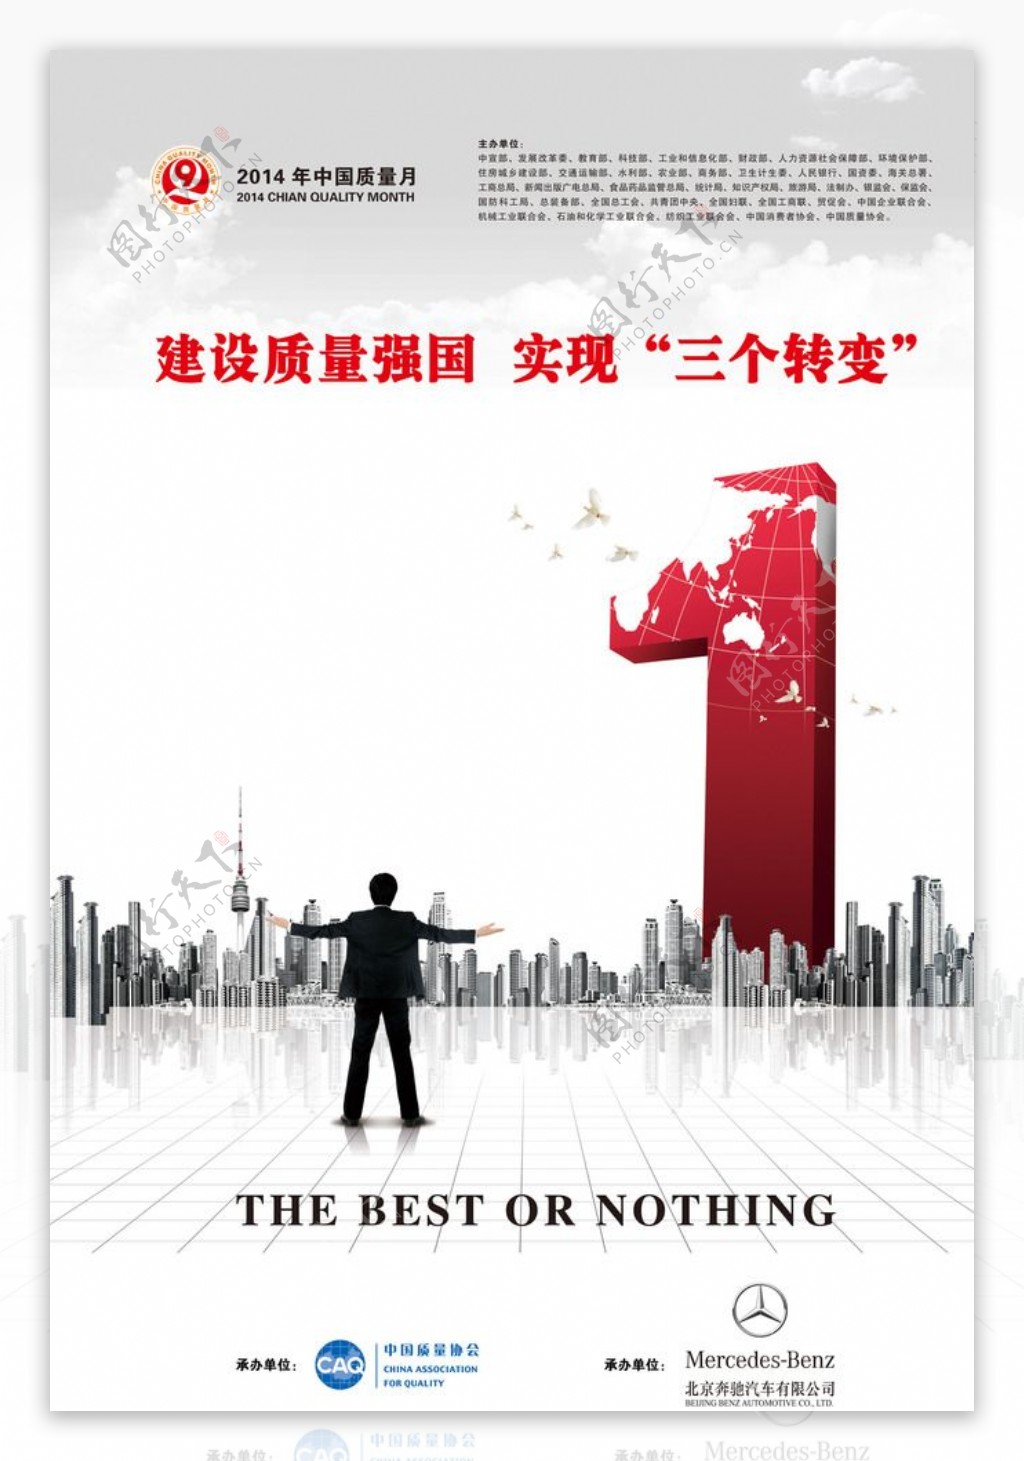 北京奔驰汽车宣传广告图片